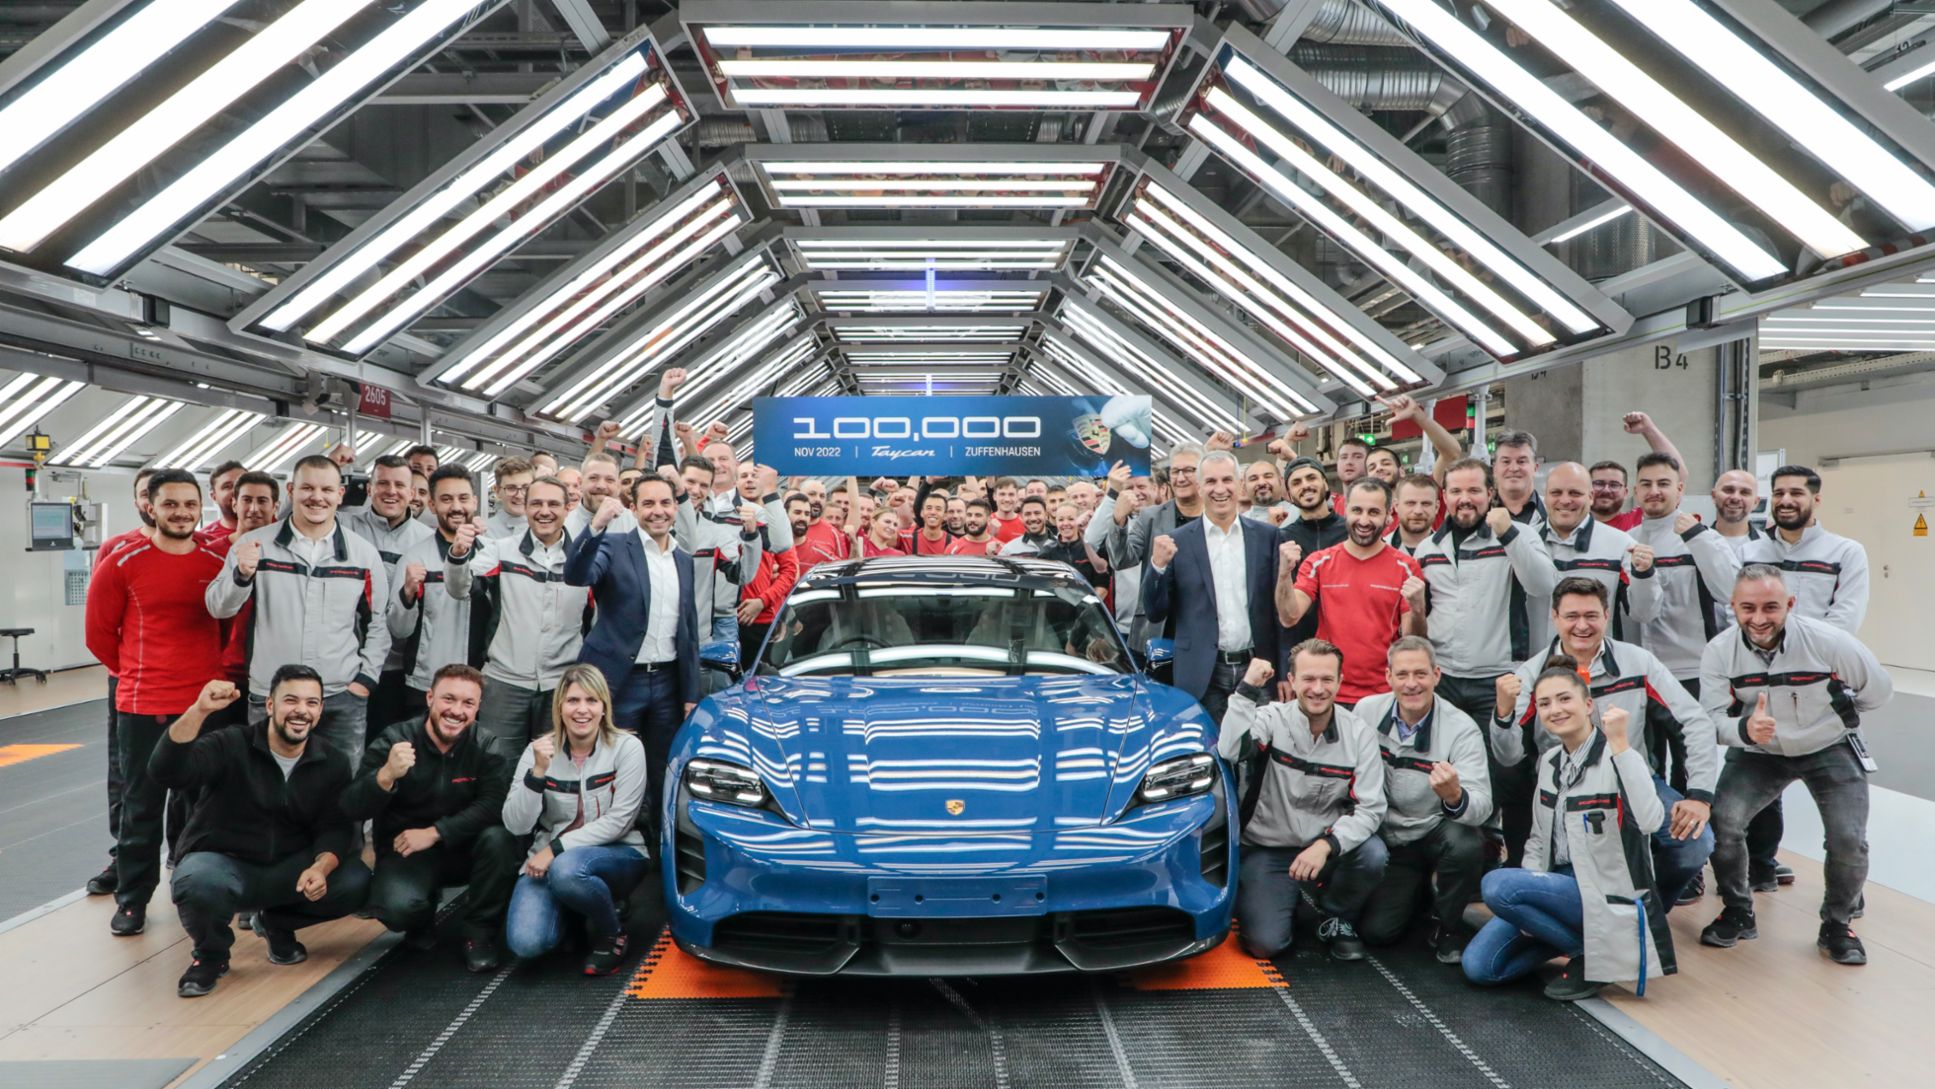 Taycan Nr. 100.000, Albrecht Reimold, Mitglied des Vorstandes, Produktion und Logistik, Mannschaft der Taycan Produktion, 2022, Porsche AG